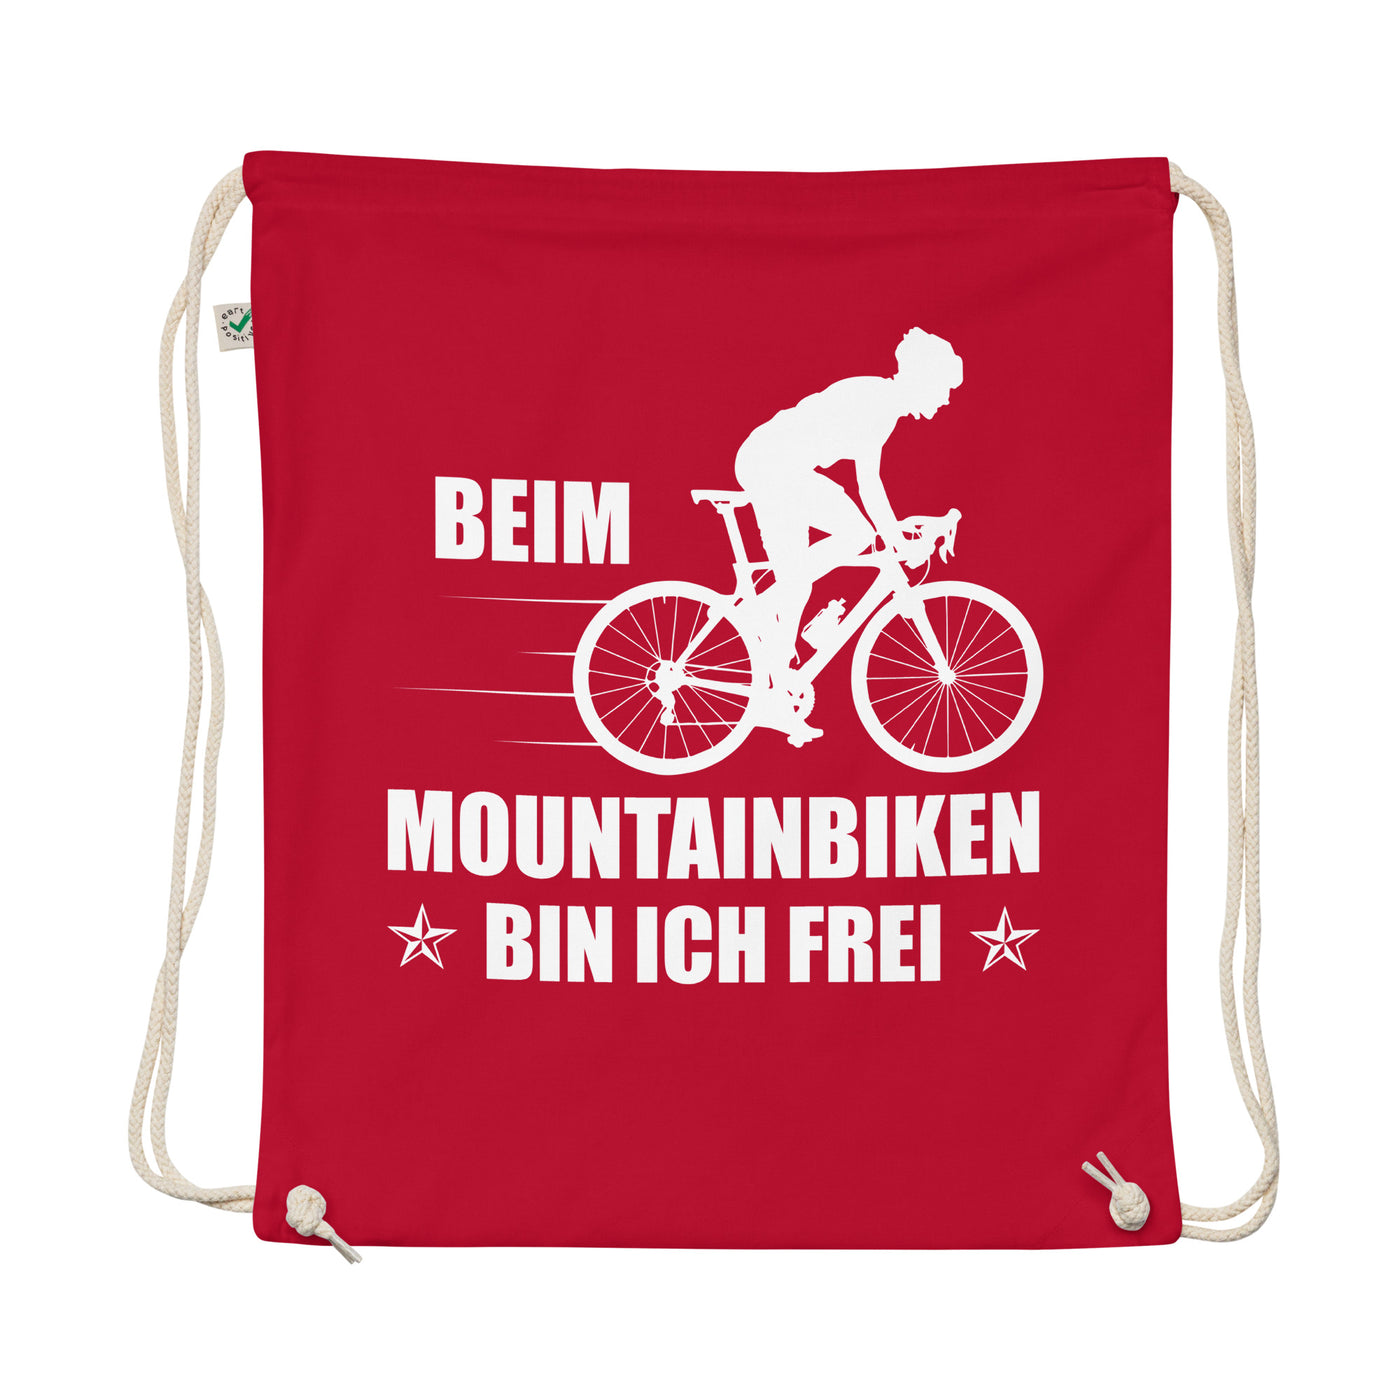 Beim Mountainbiken Bin Ich Frei 2 - Organic Turnbeutel fahrrad